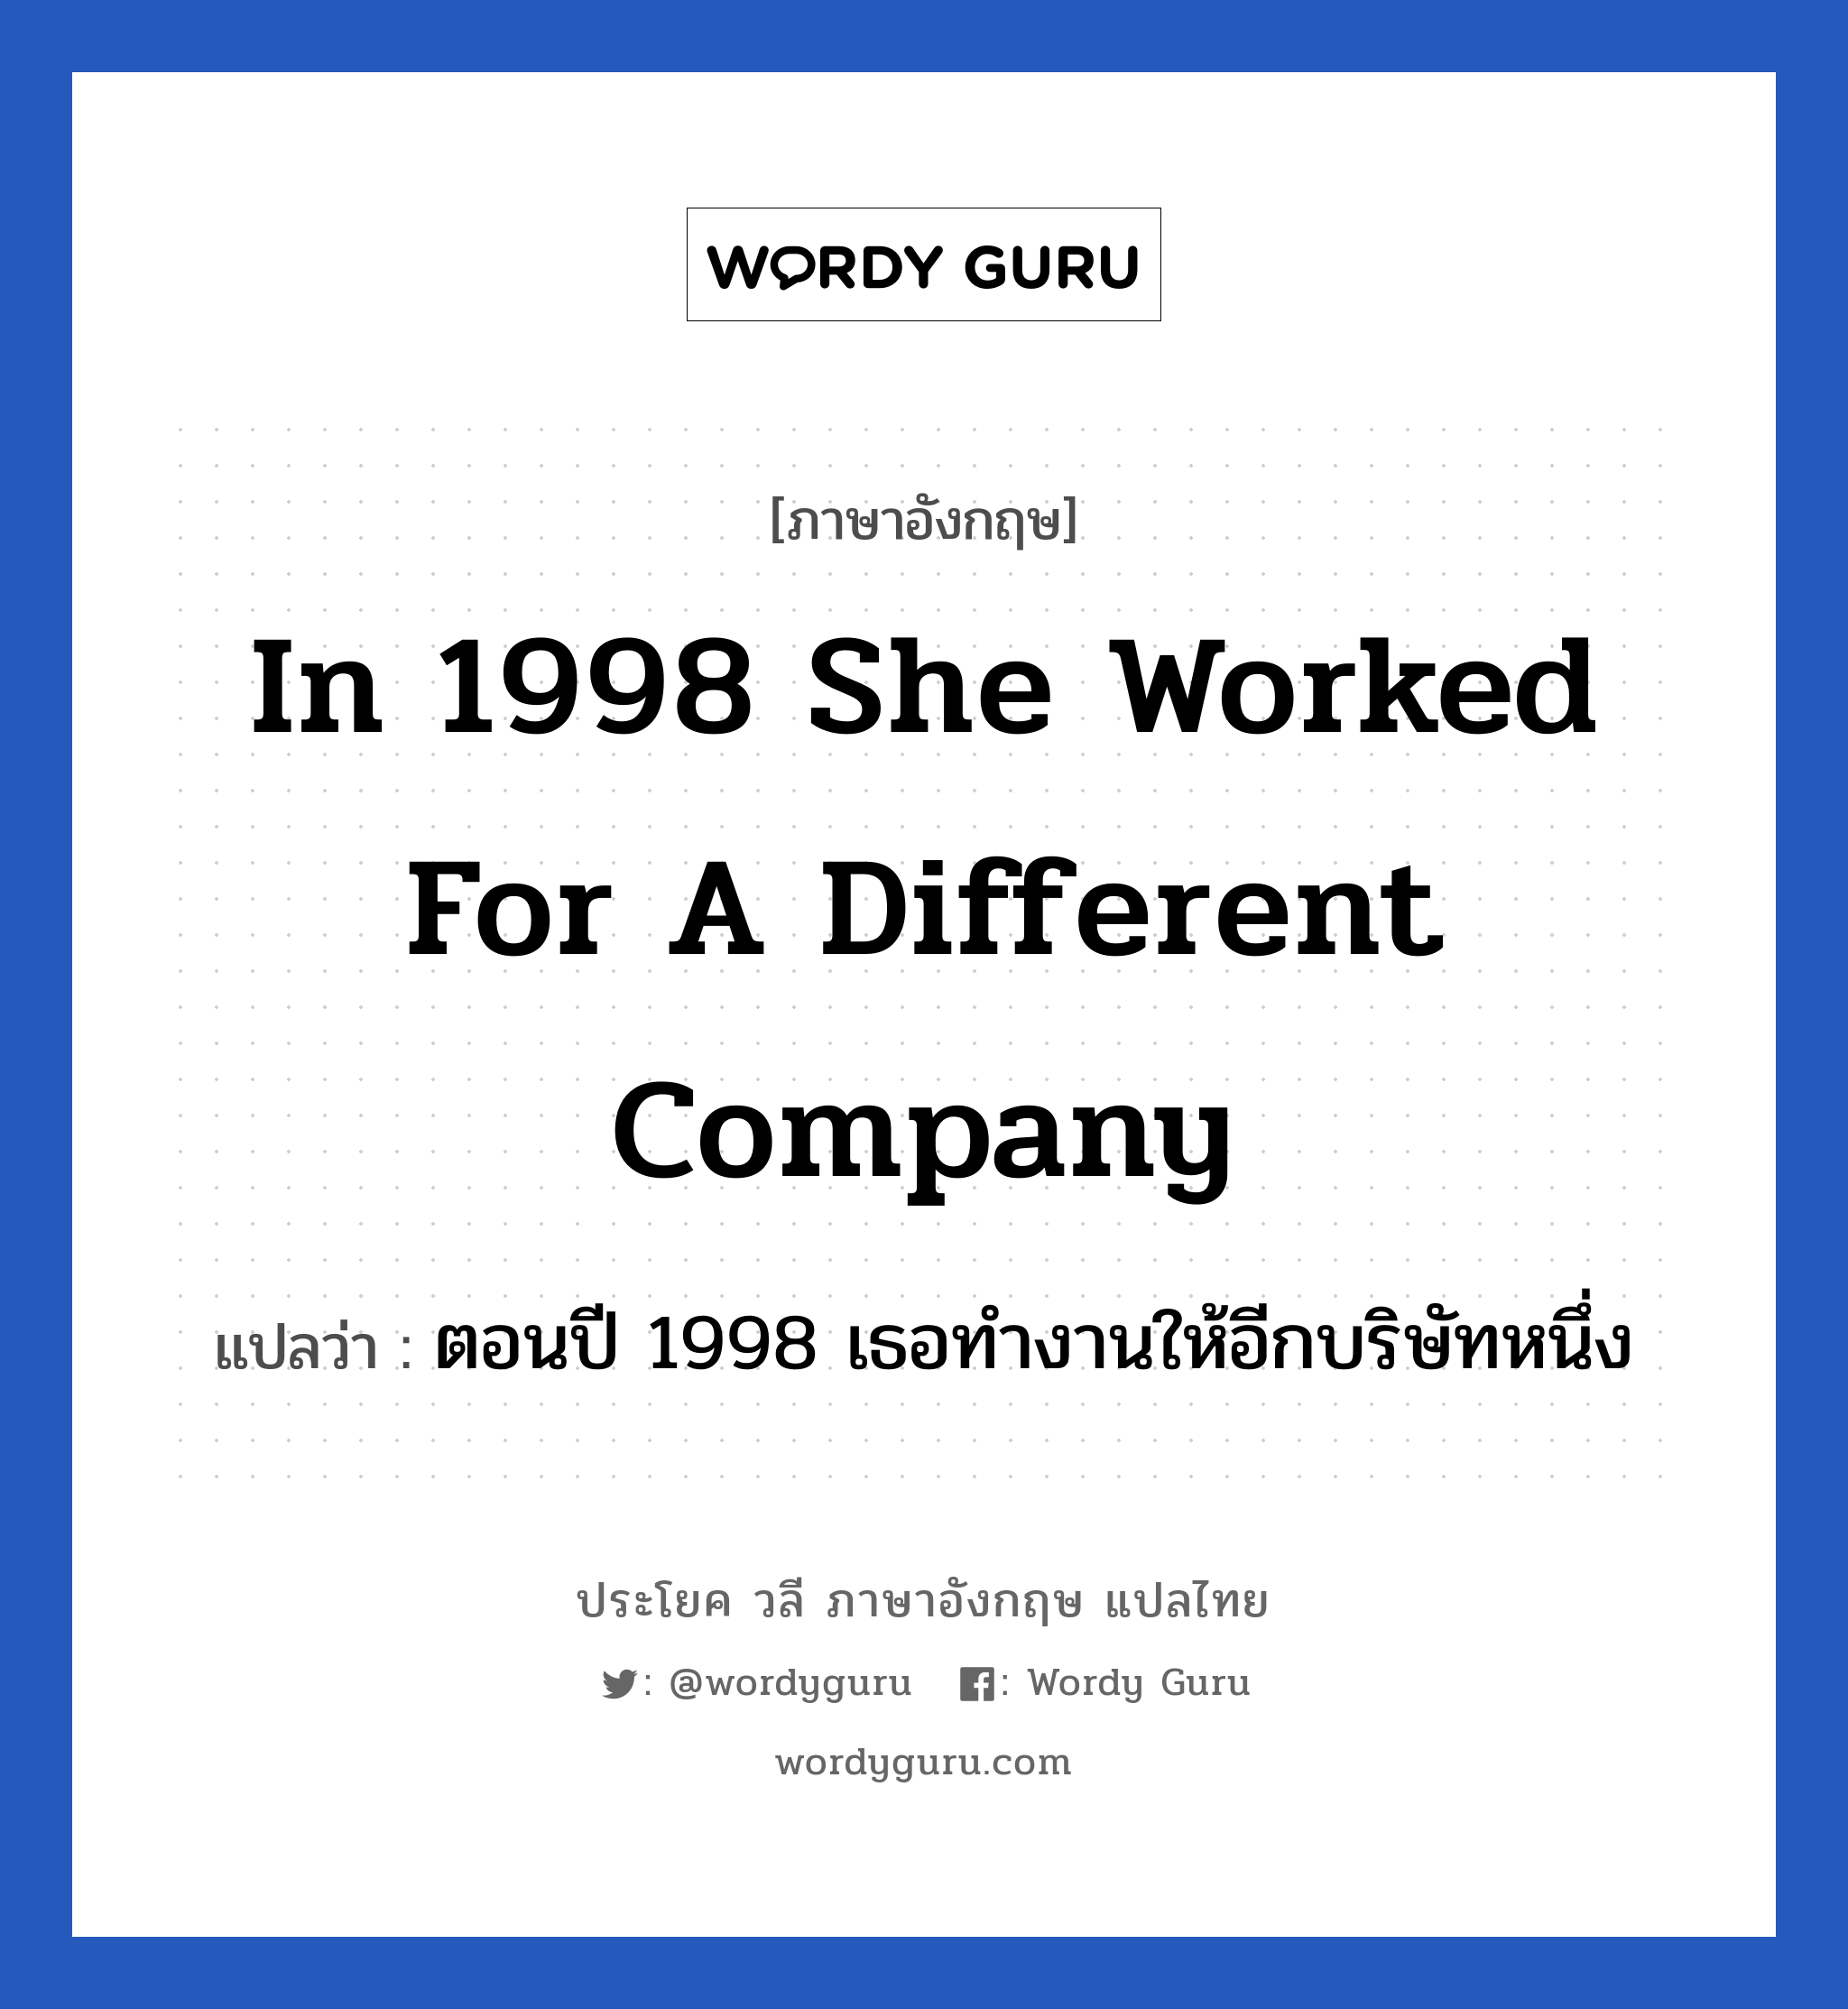 In 1998 she worked for a different company แปลว่า?, วลีภาษาอังกฤษ In 1998 she worked for a different company แปลว่า ตอนปี 1998 เธอทำงานให้อีกบริษัทหนึ่ง หมวด ในที่ทำงาน